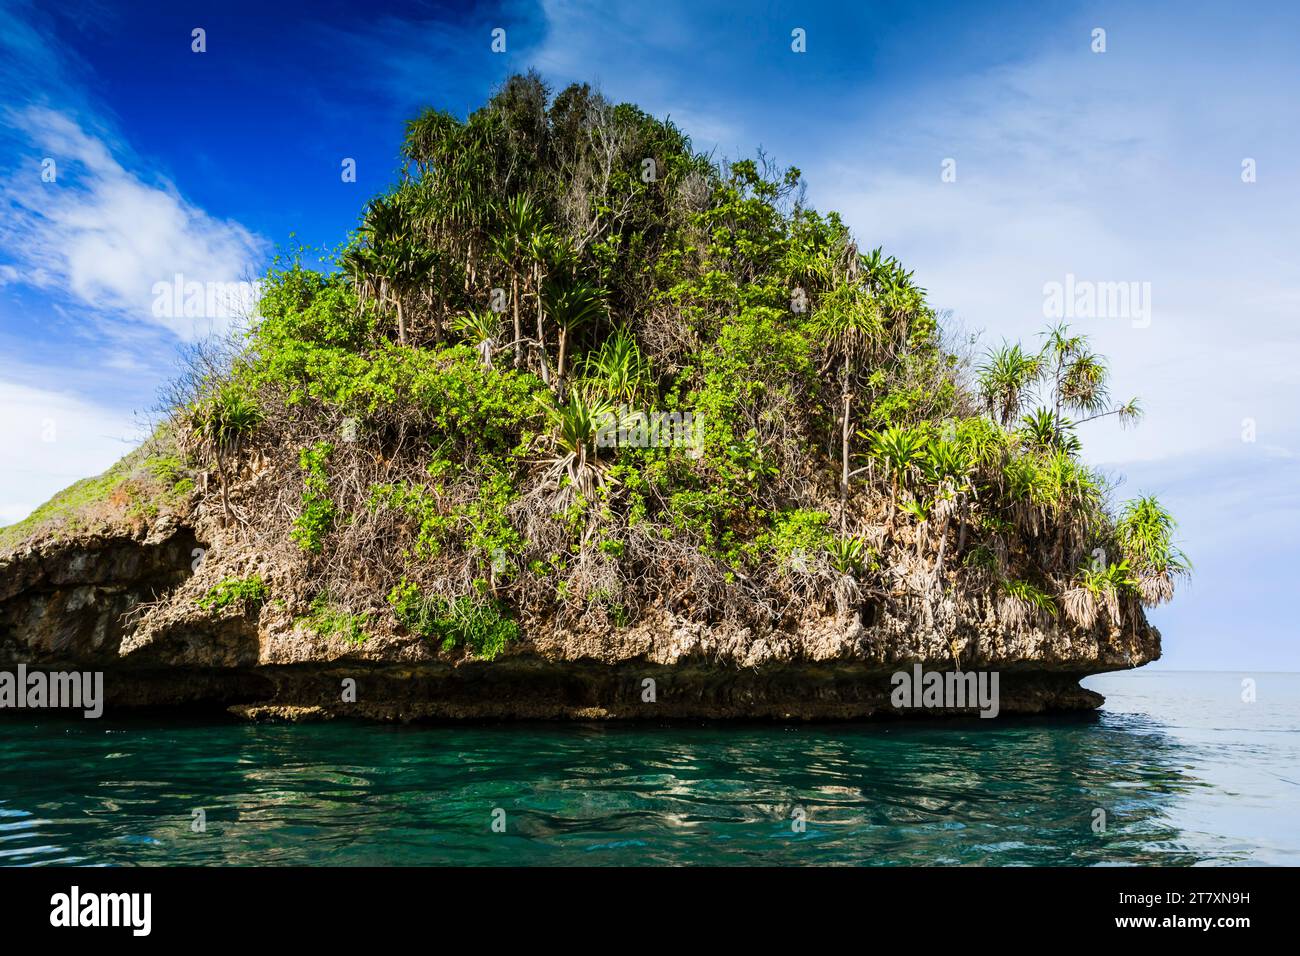 Vista delle isolette ricoperte di vegetazione dall'interno del porto naturale protetto di Wayag Bay, Raja Ampat, Indonesia, Sud-Est asiatico, Asia Foto Stock